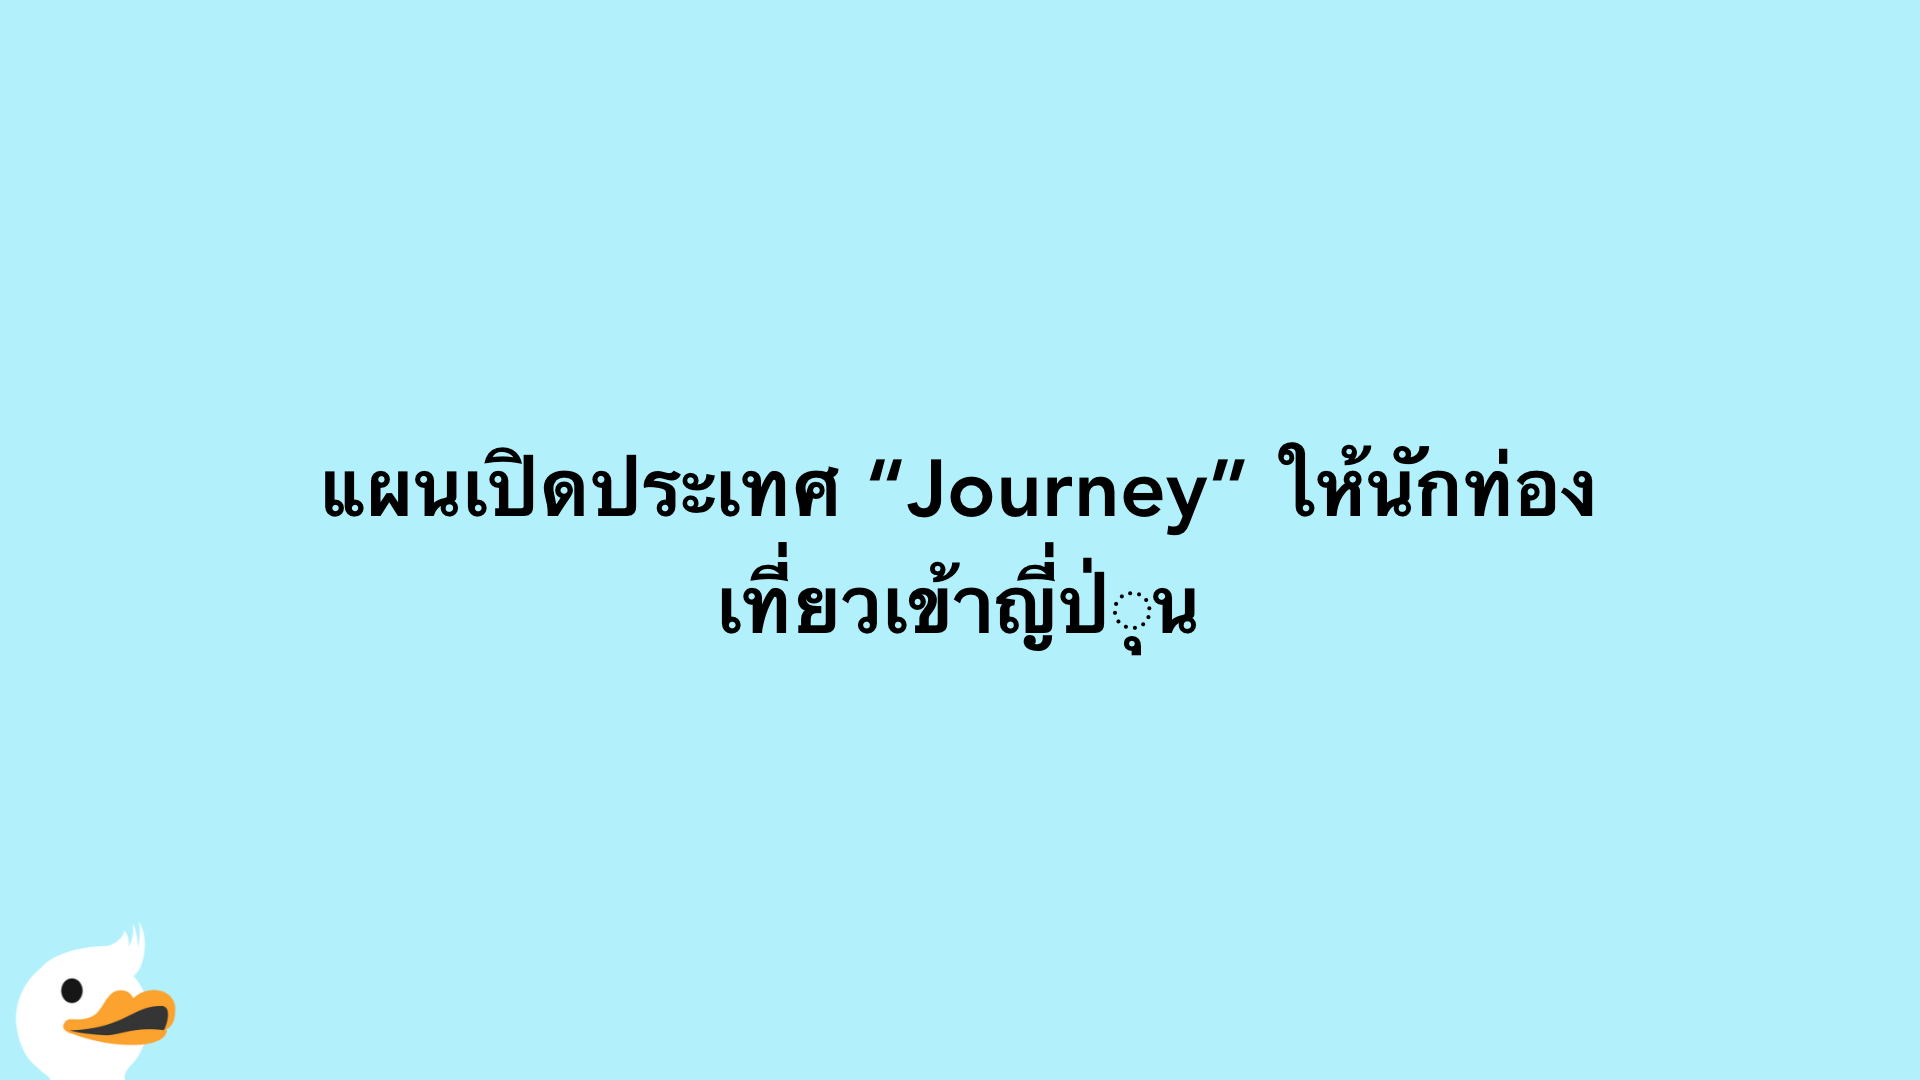 แผนเปิดประเทศ “Journey” ให้นักท่องเที่ยวเข้าญี่ปุ่น